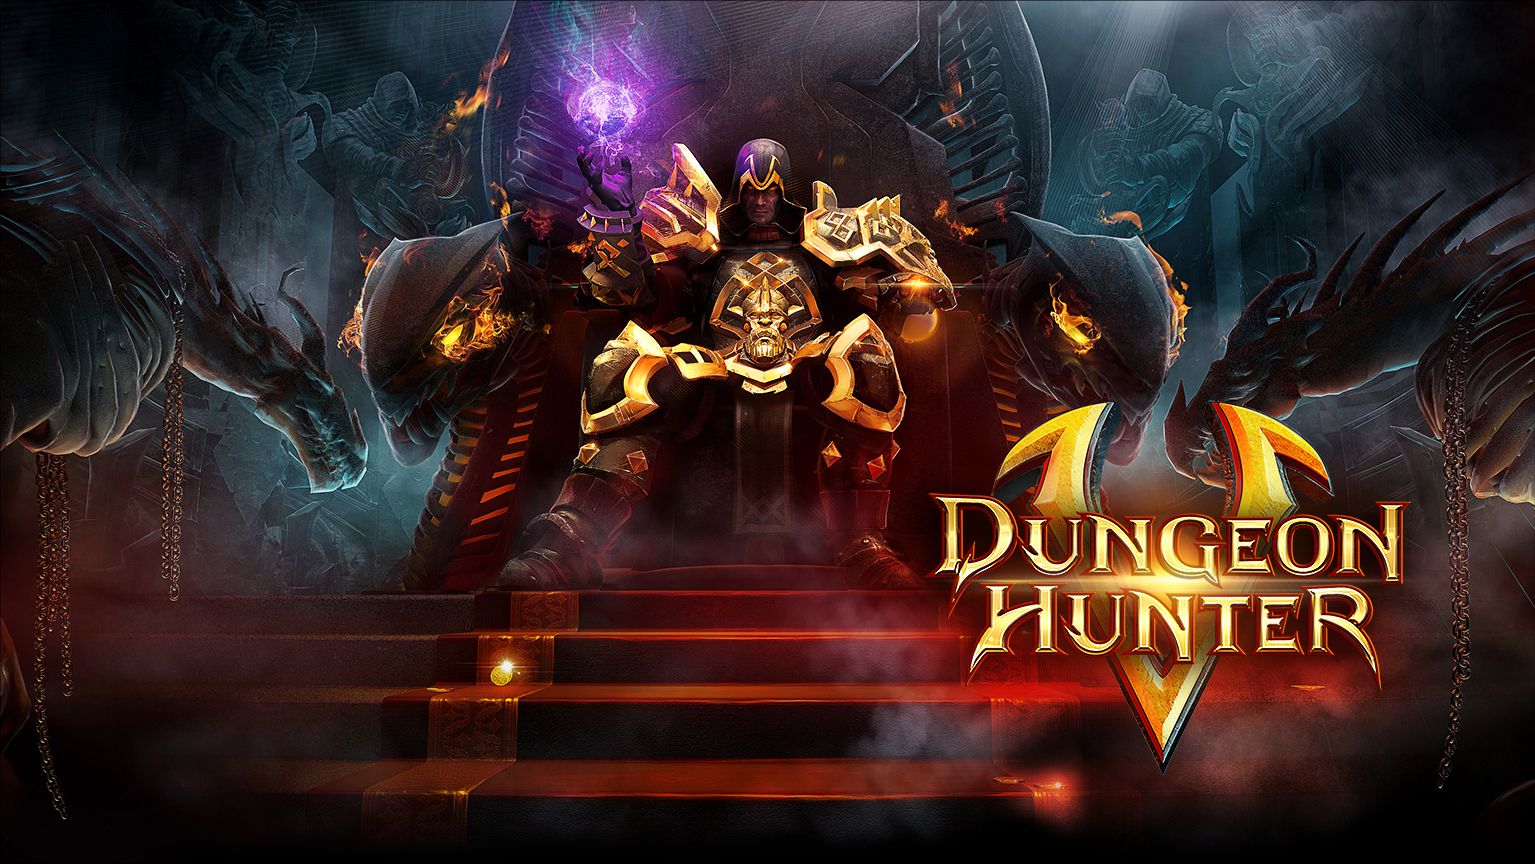 Dungeon Hunter 5, Gameloft annonce Dungeon Hunter 5 via un nouveau site officiel